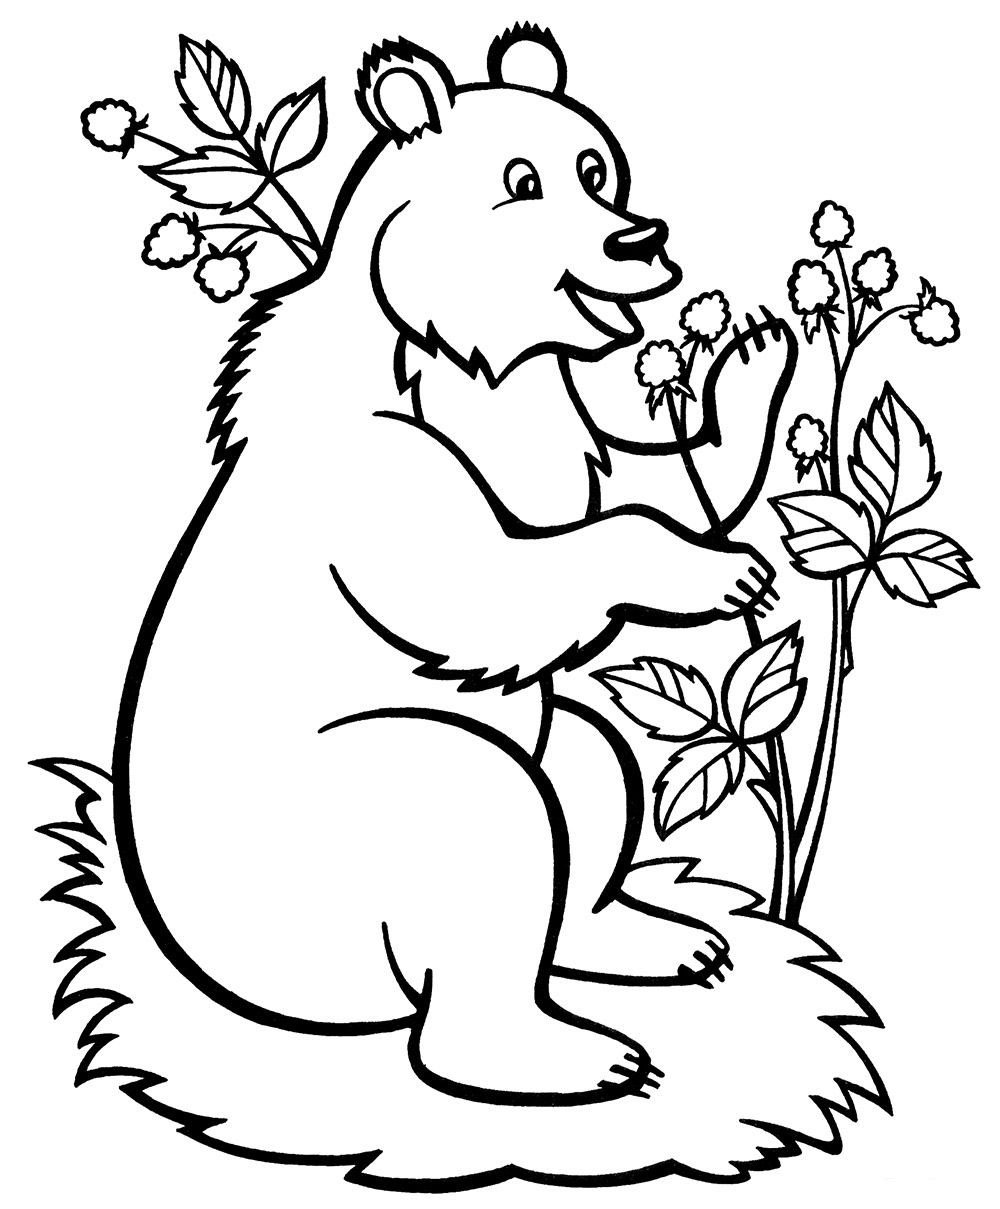 Раскраски по сказке Три медведя: распечатать или скачать бесплатно | centerforstrategy.ru